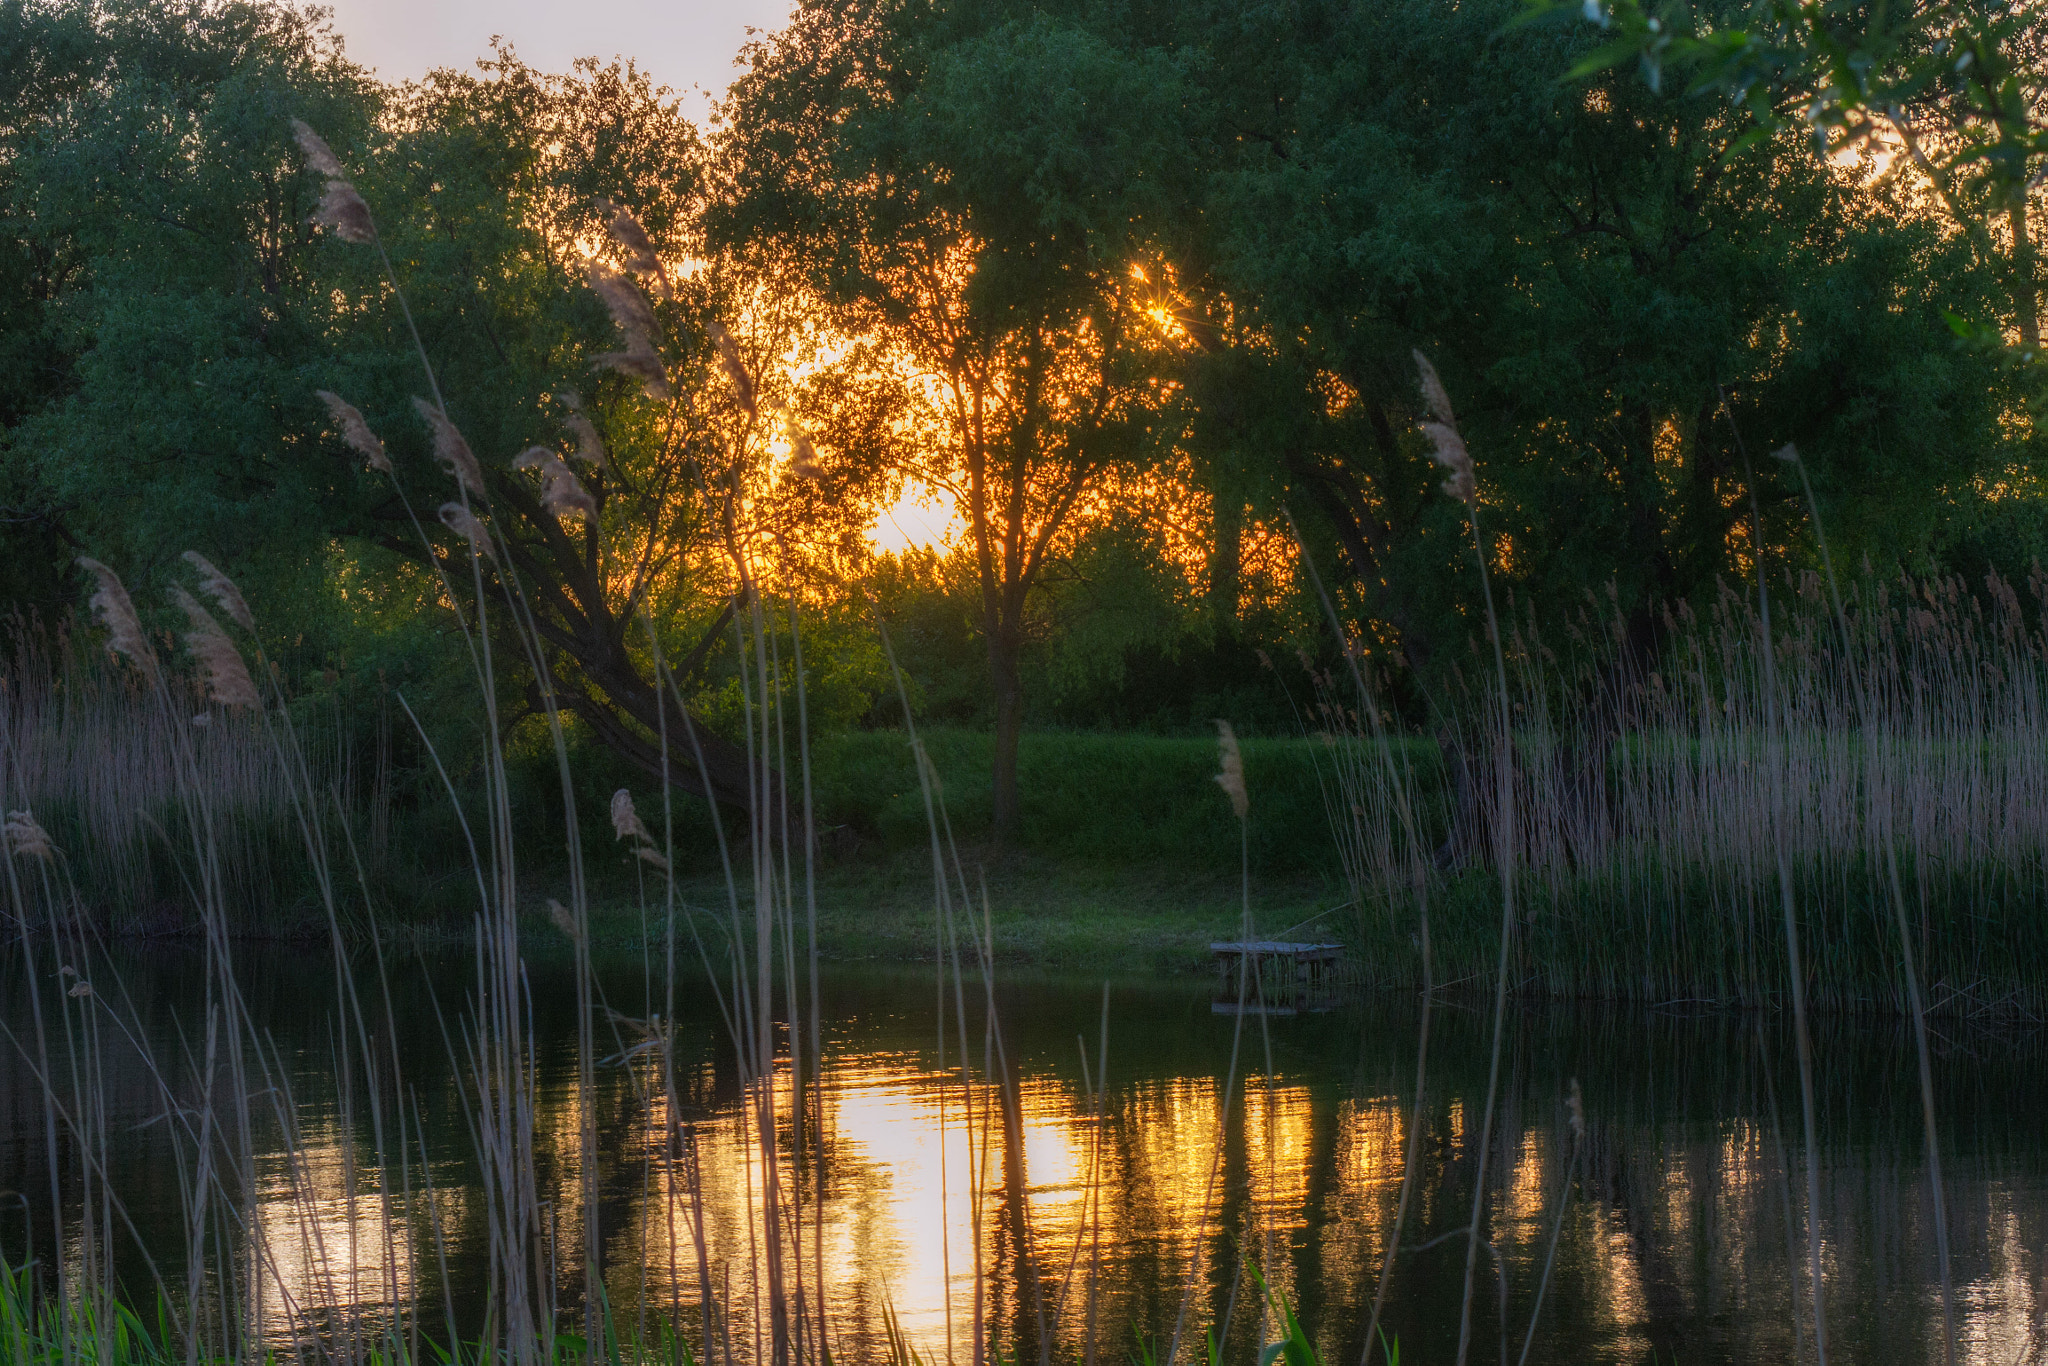 Nikon D3100 + AF Zoom-Nikkor 28-200mm f/3.5-5.6G IF-ED sample photo. Sunset on the river photography